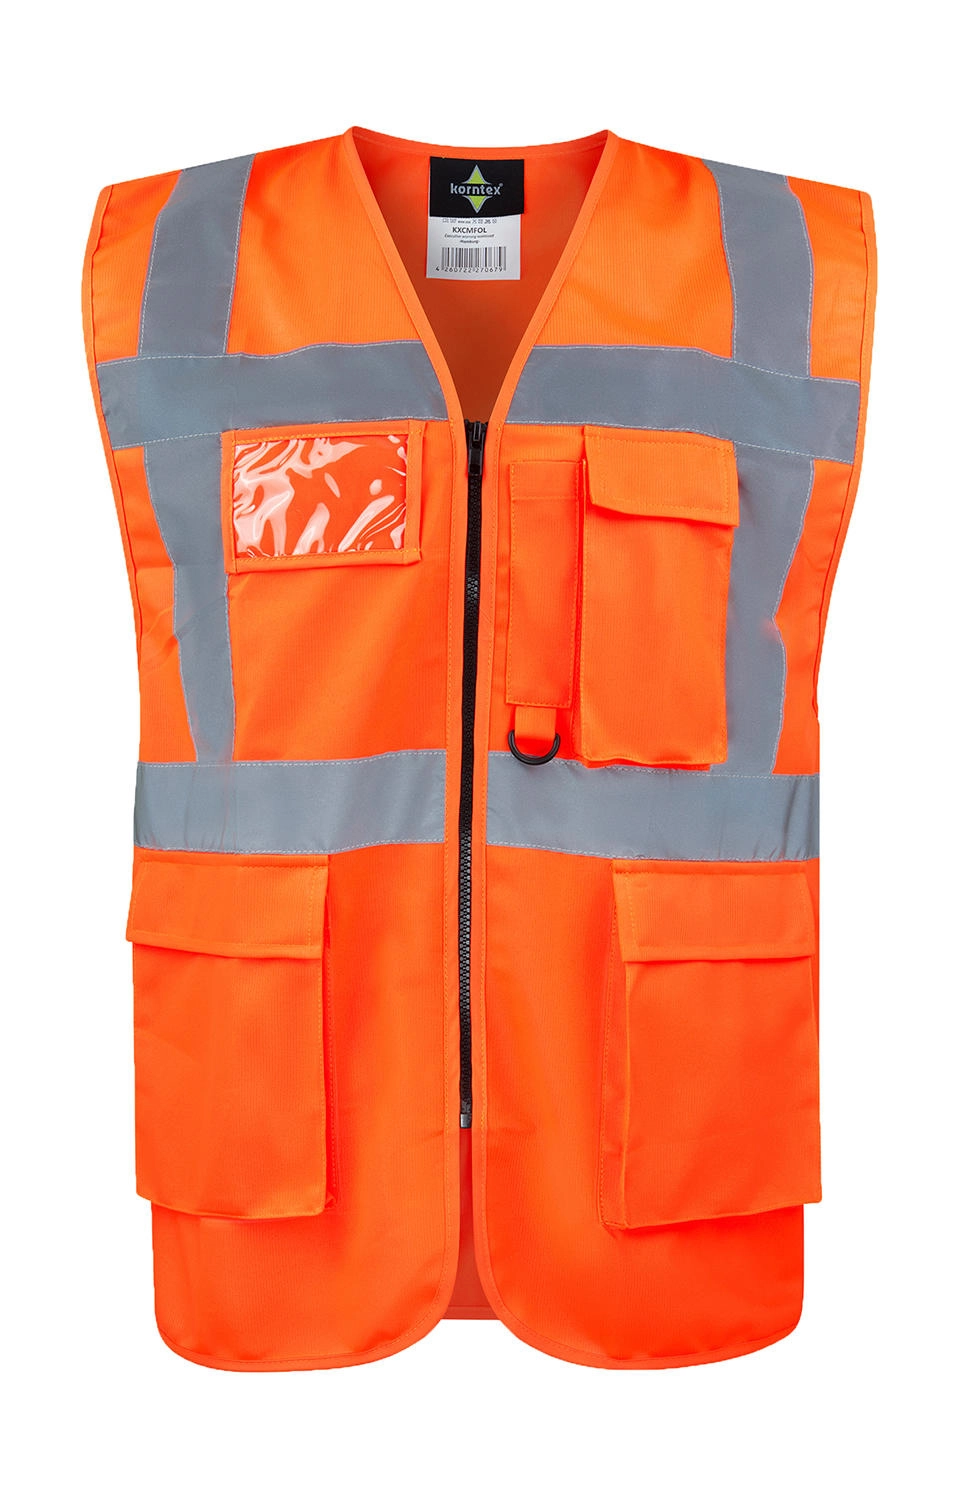 Executive Safety Vest 